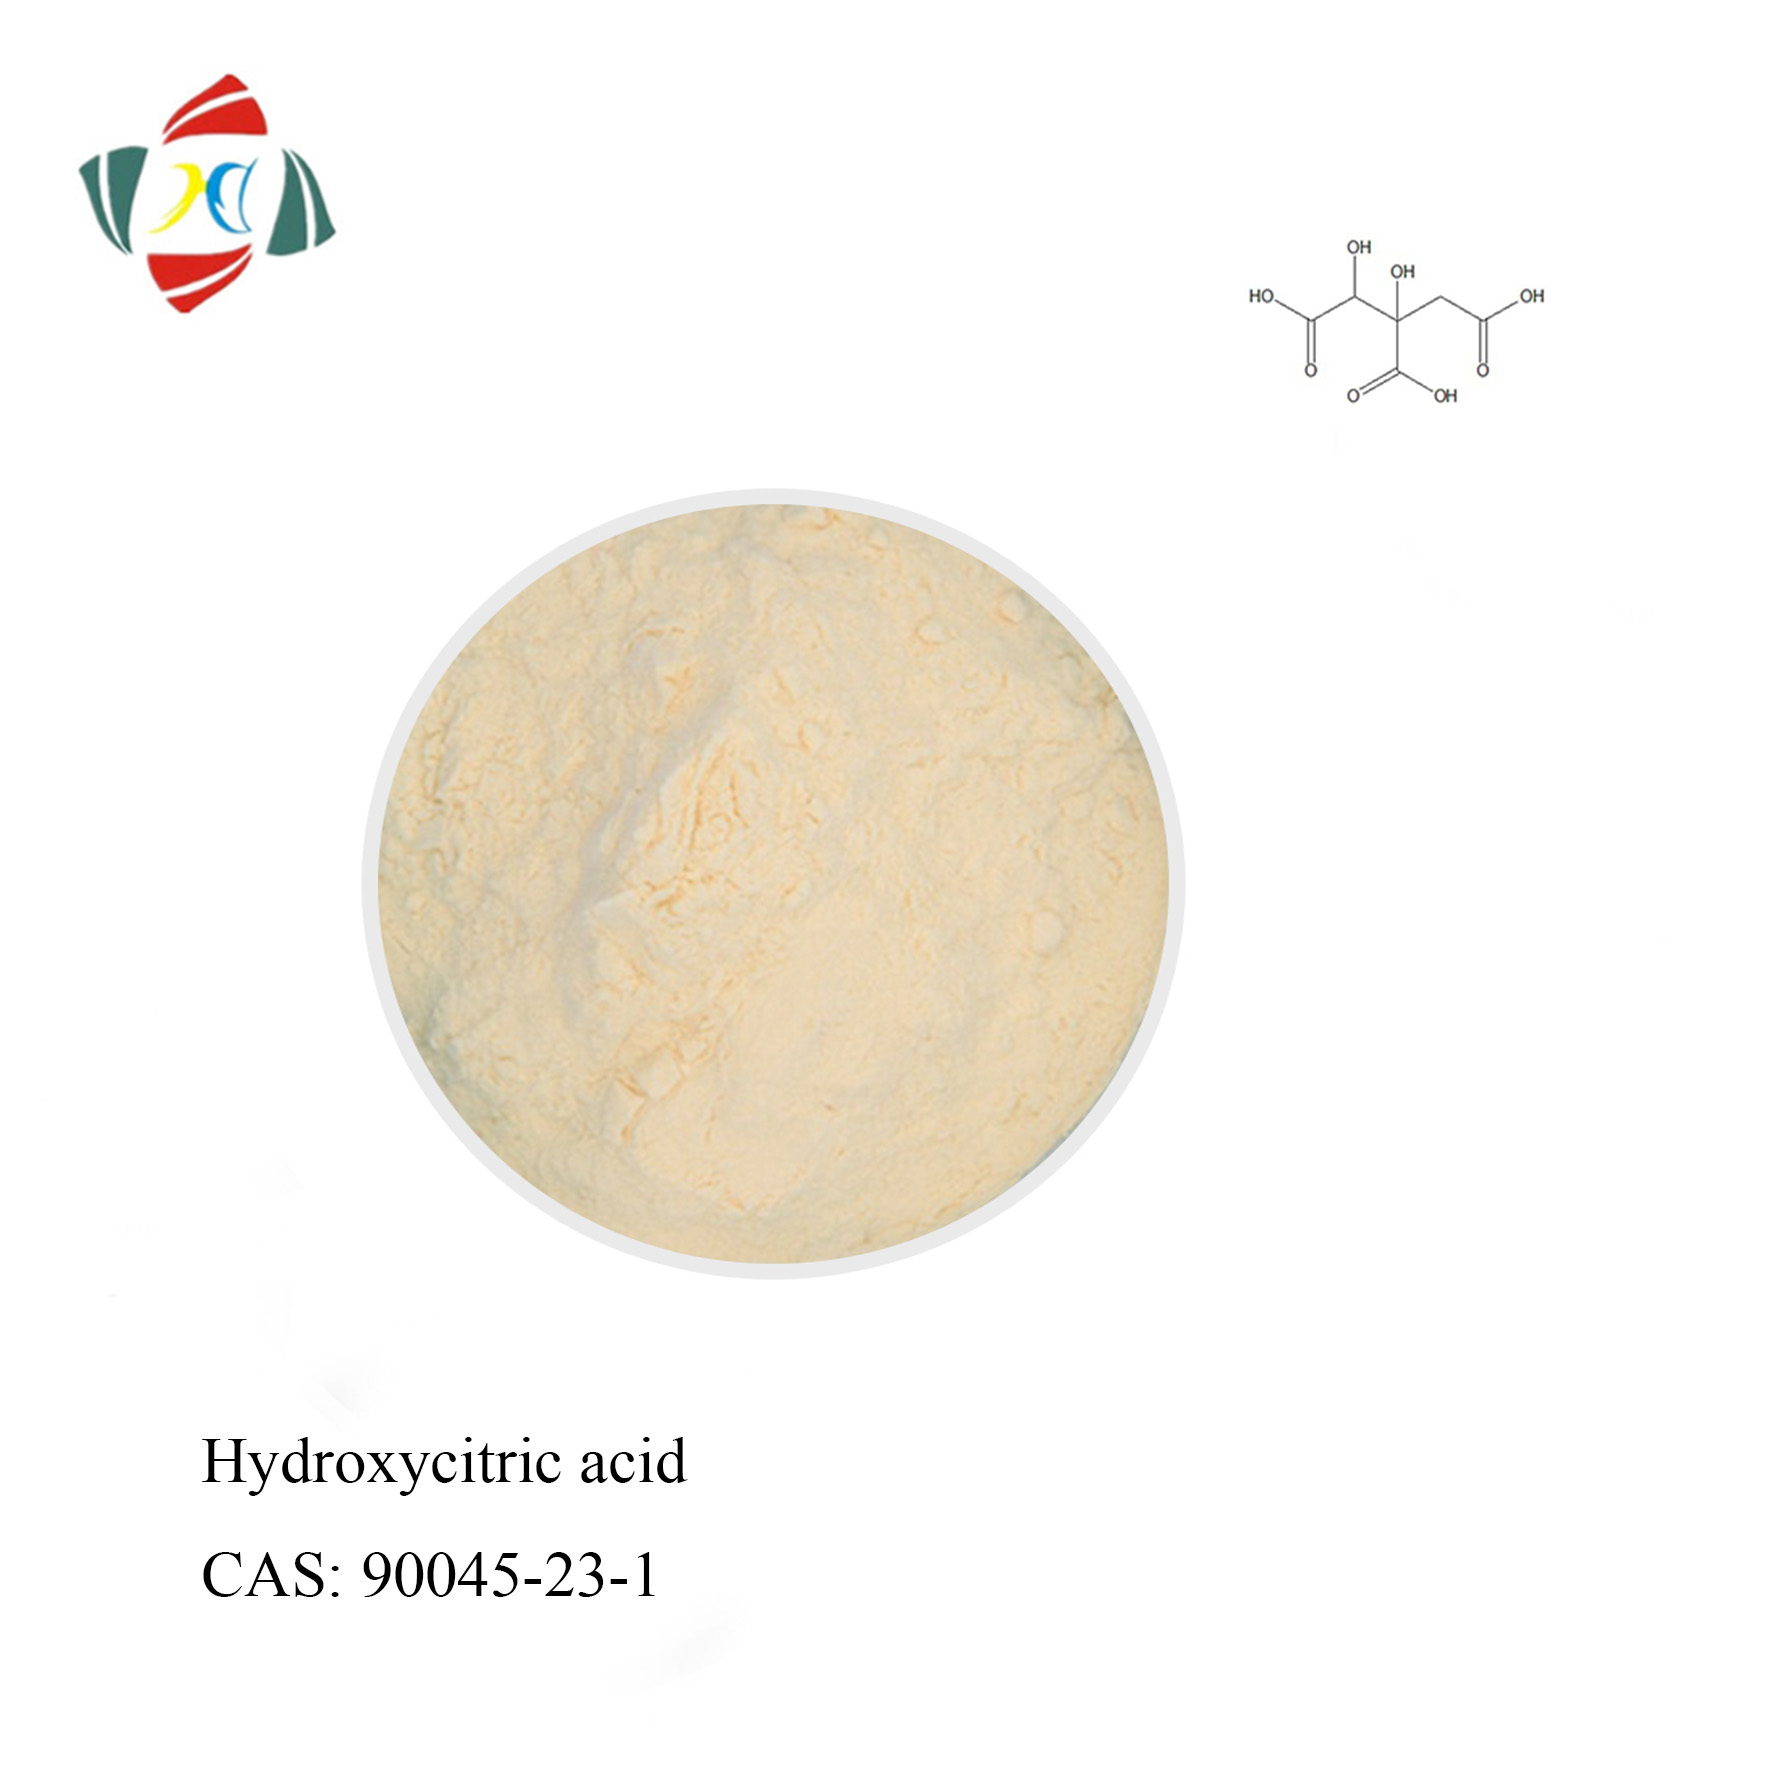 Extrait de Garcinia cambogia Acide hydroxycitrique CAS 90045-23-1